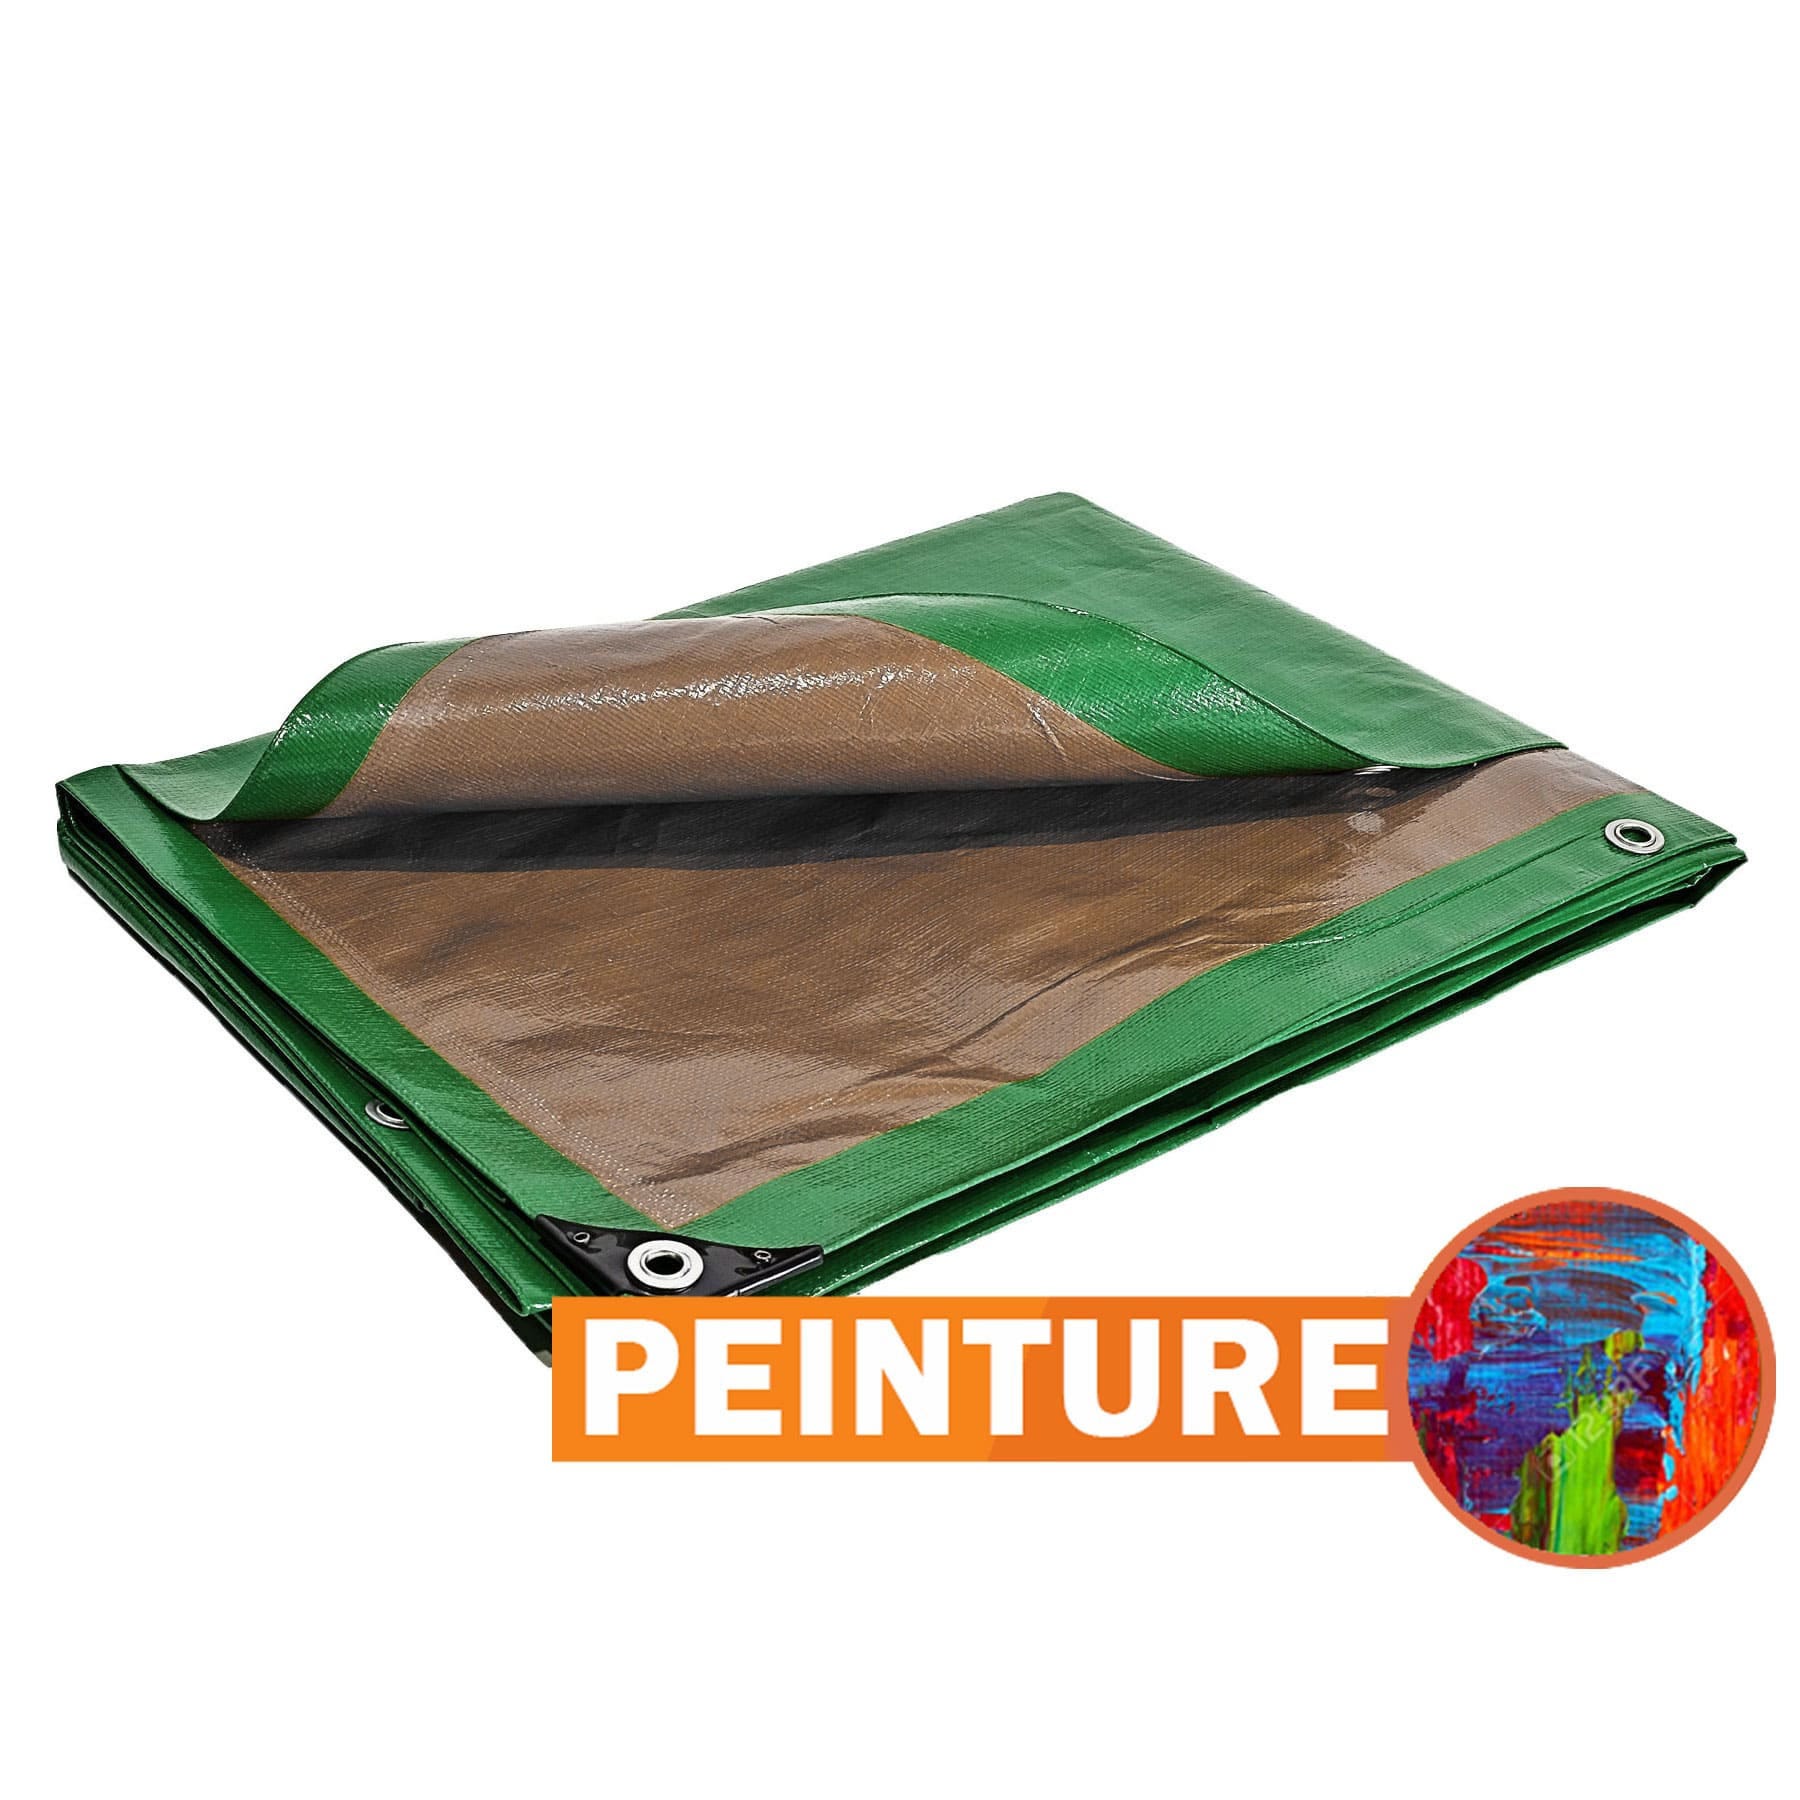 Bâche Peinture 8x12 m - TECPLAST 250PE - Verte et Marron - Haute Performance - Bâche de protection Peinture pour sol et meuble 4